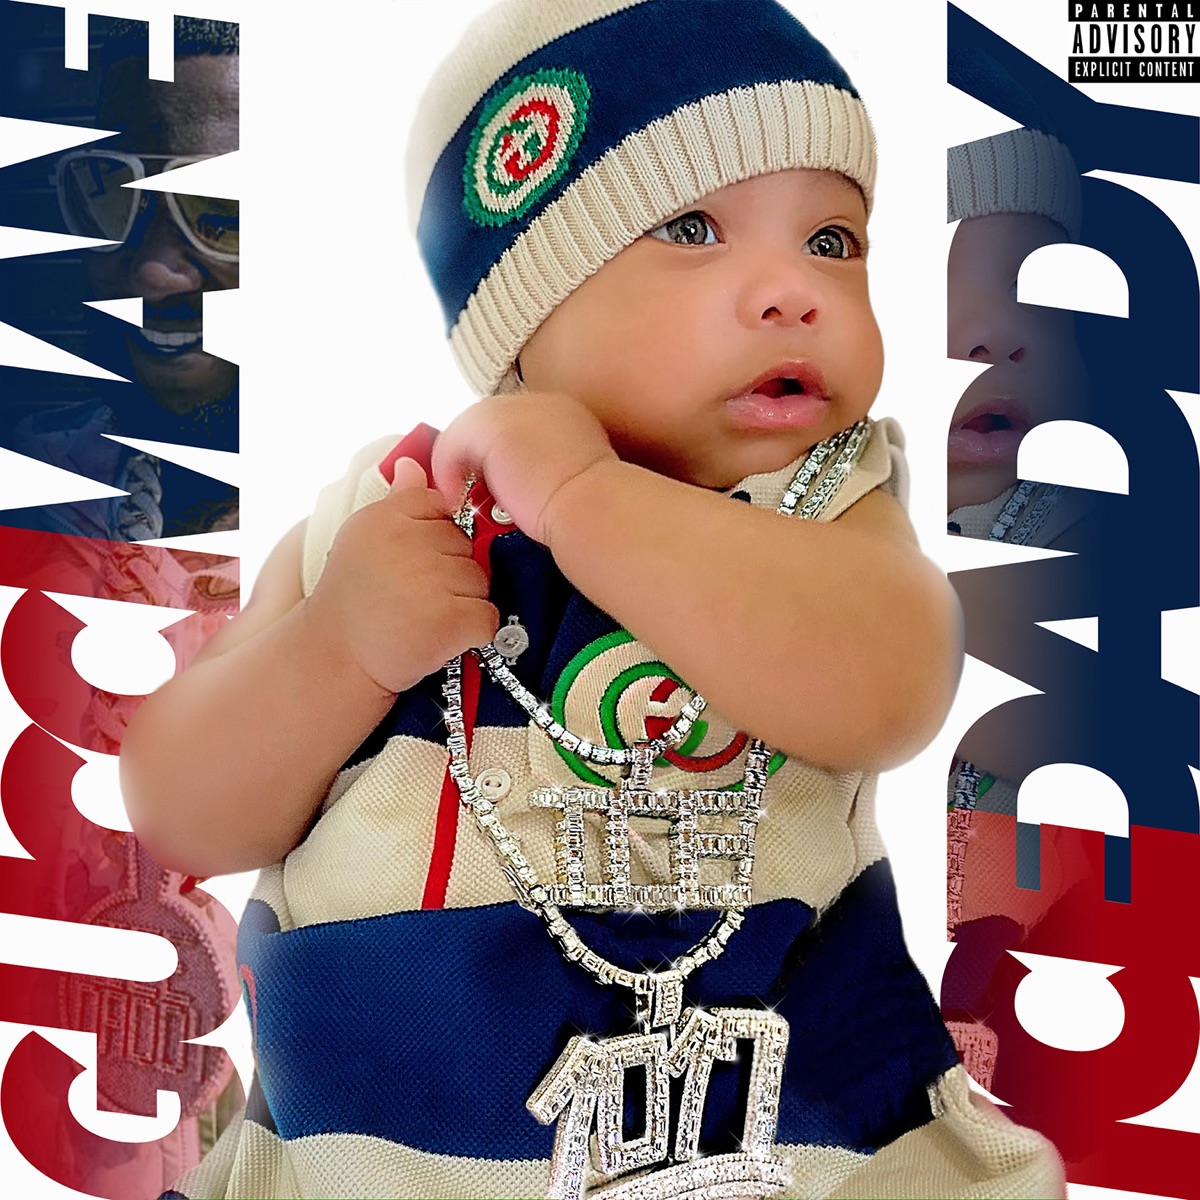 Droptopwop by Gucci Mane on Apple Music